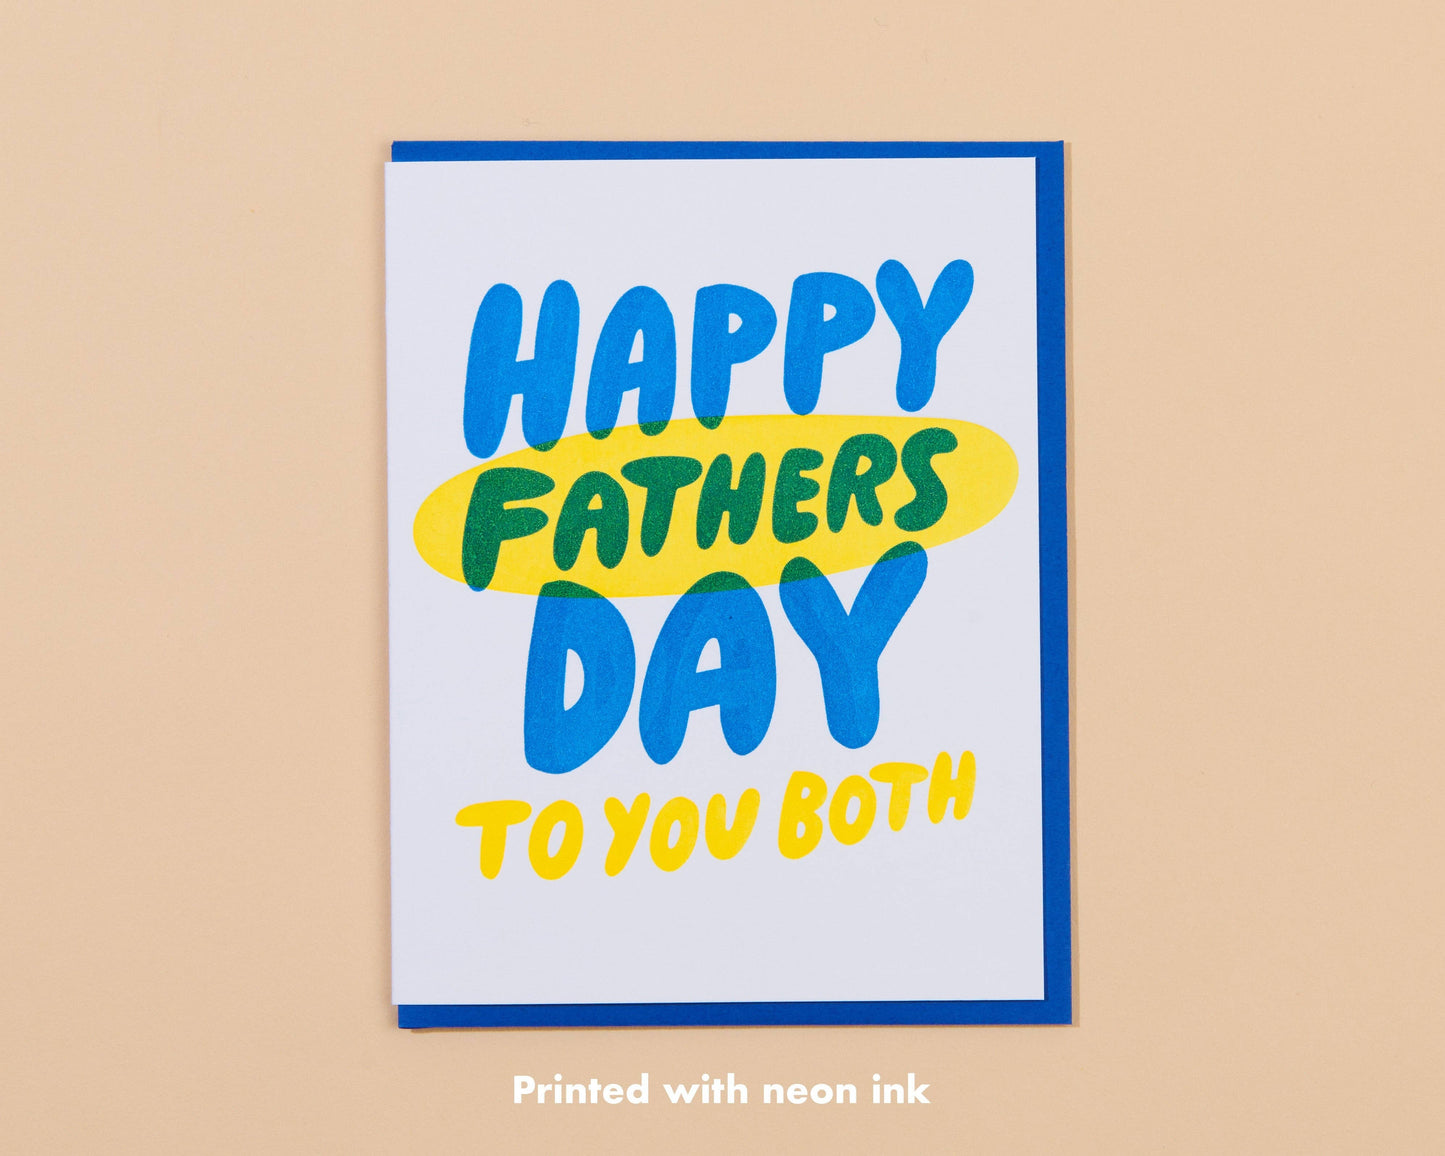 Two Fathers LGBTQ card